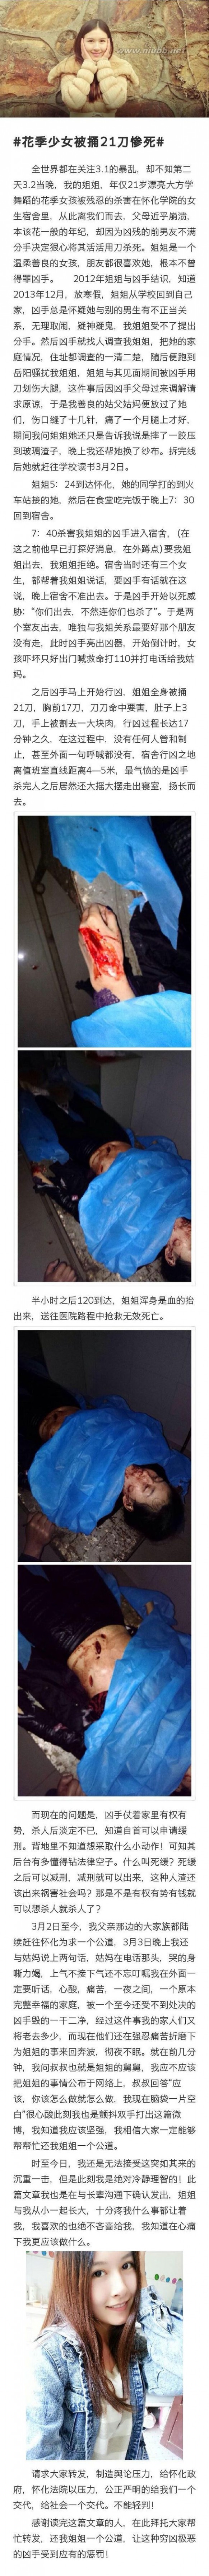 湖南怀化21岁女大学生余瑾被富二代前男友捅17刀致死，慎入（图）_怀化学院杀人事件